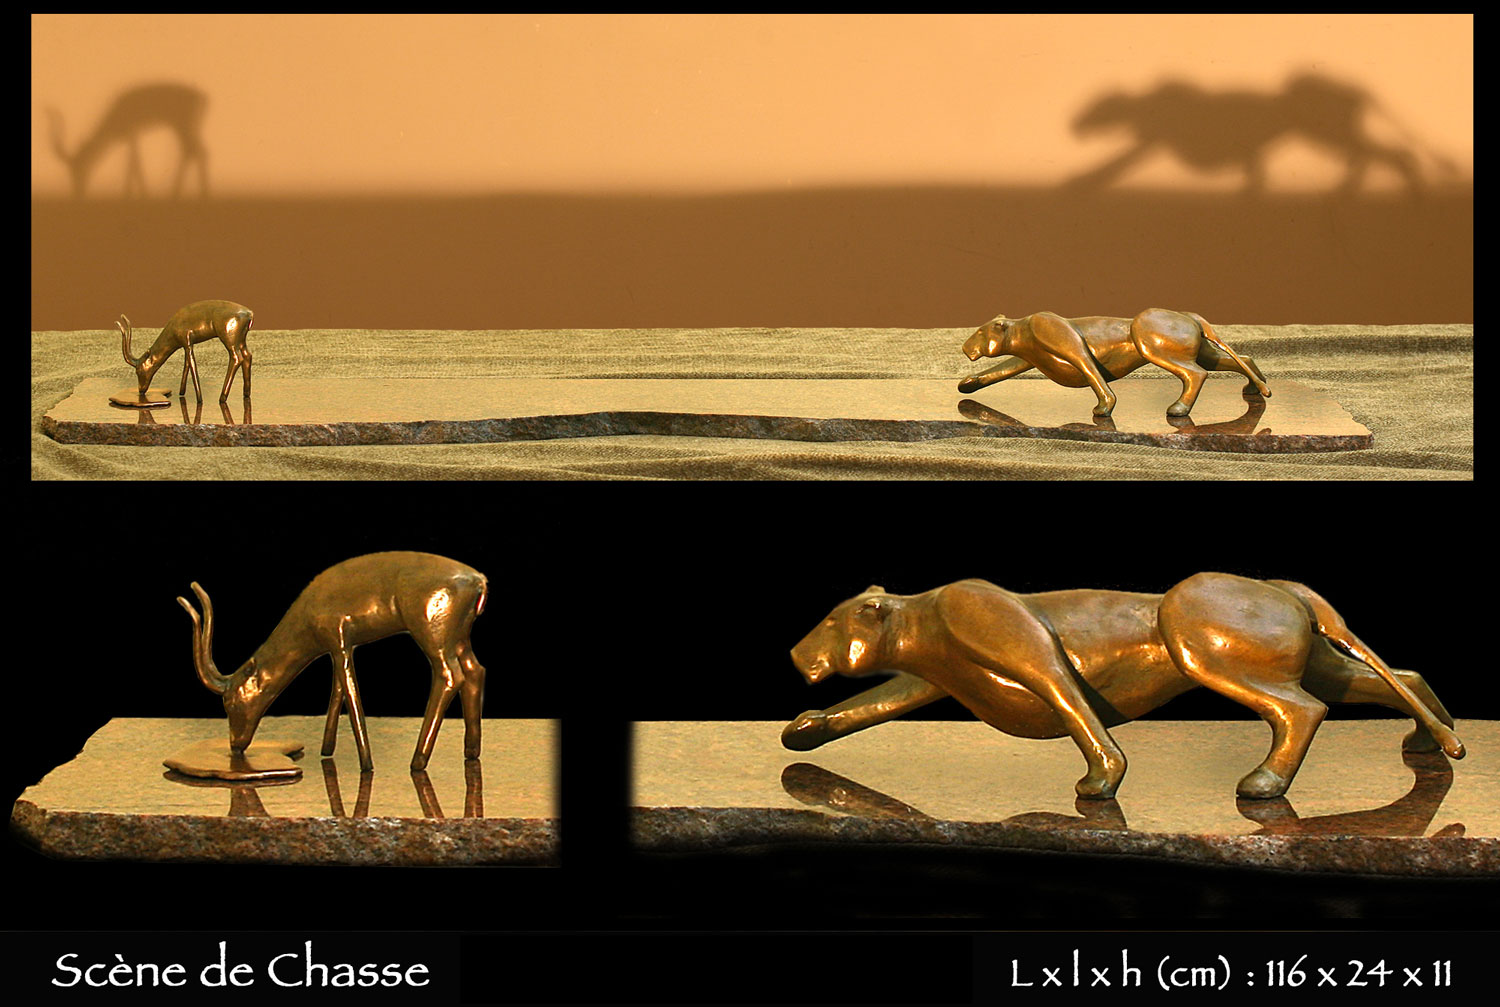 statue en bronze d'une lionne chassant une gazelle dans la savane